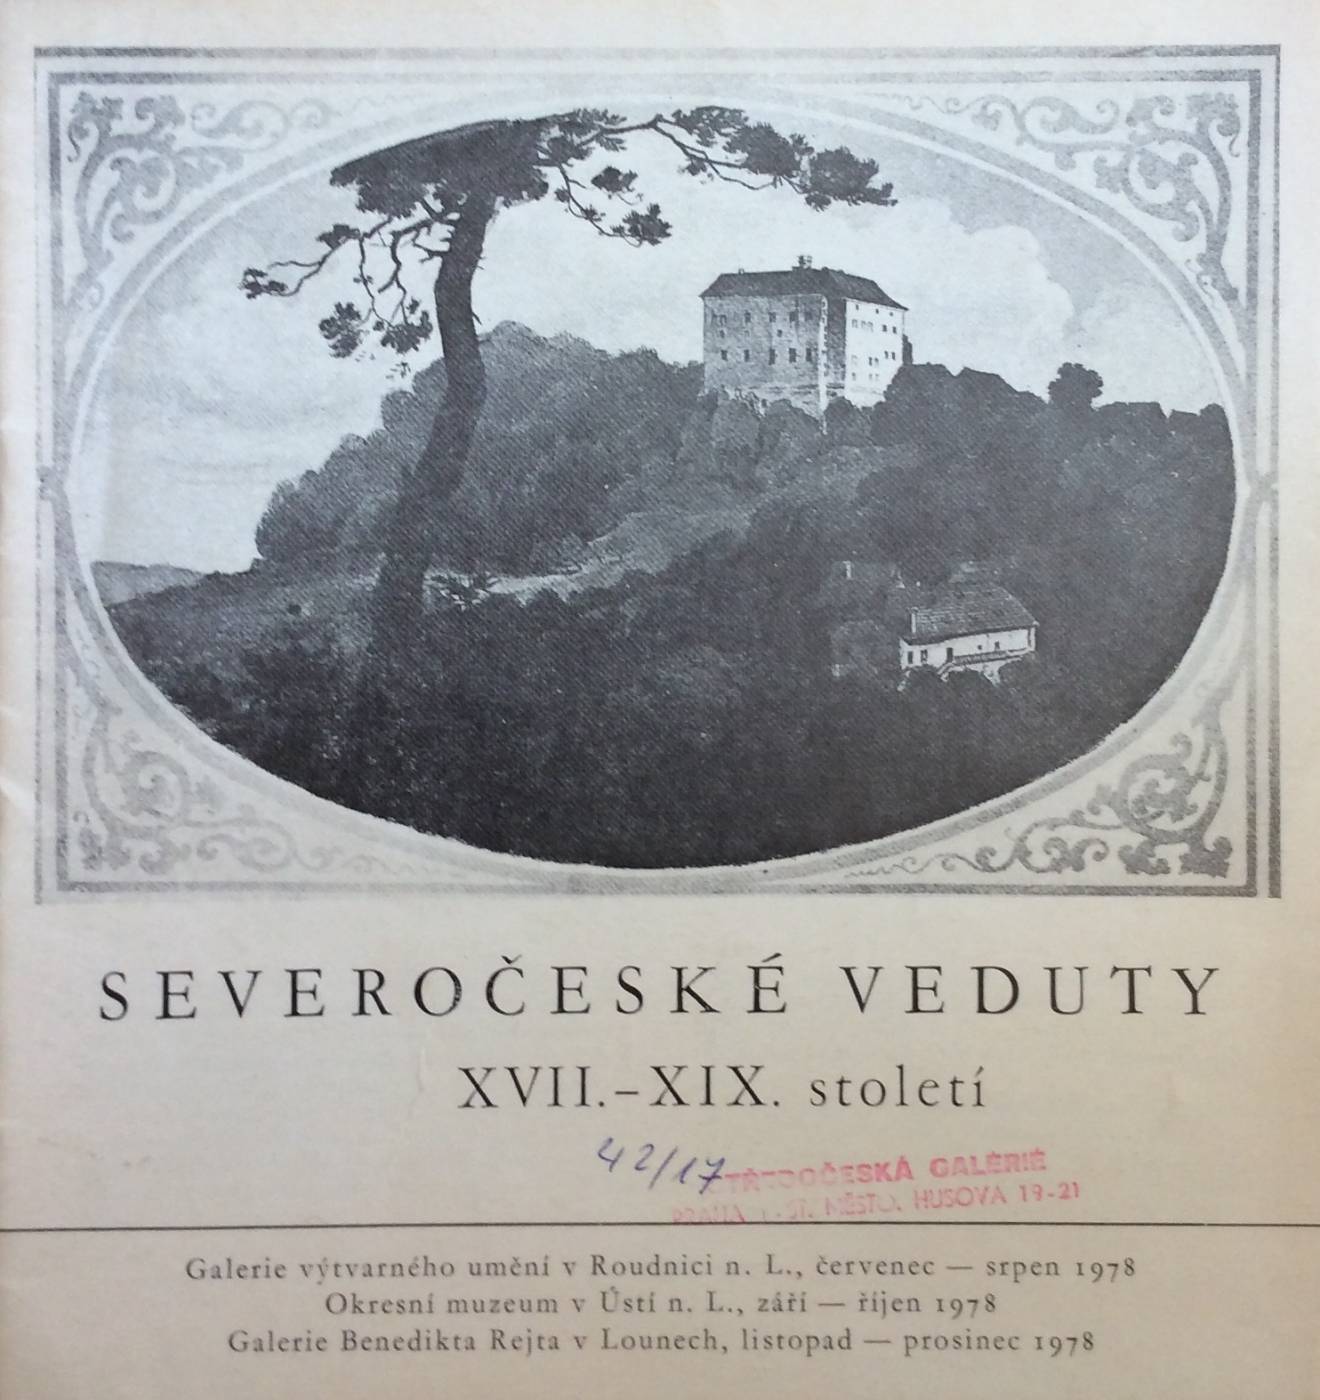 Severočeské veduty XVII. – XIX. století